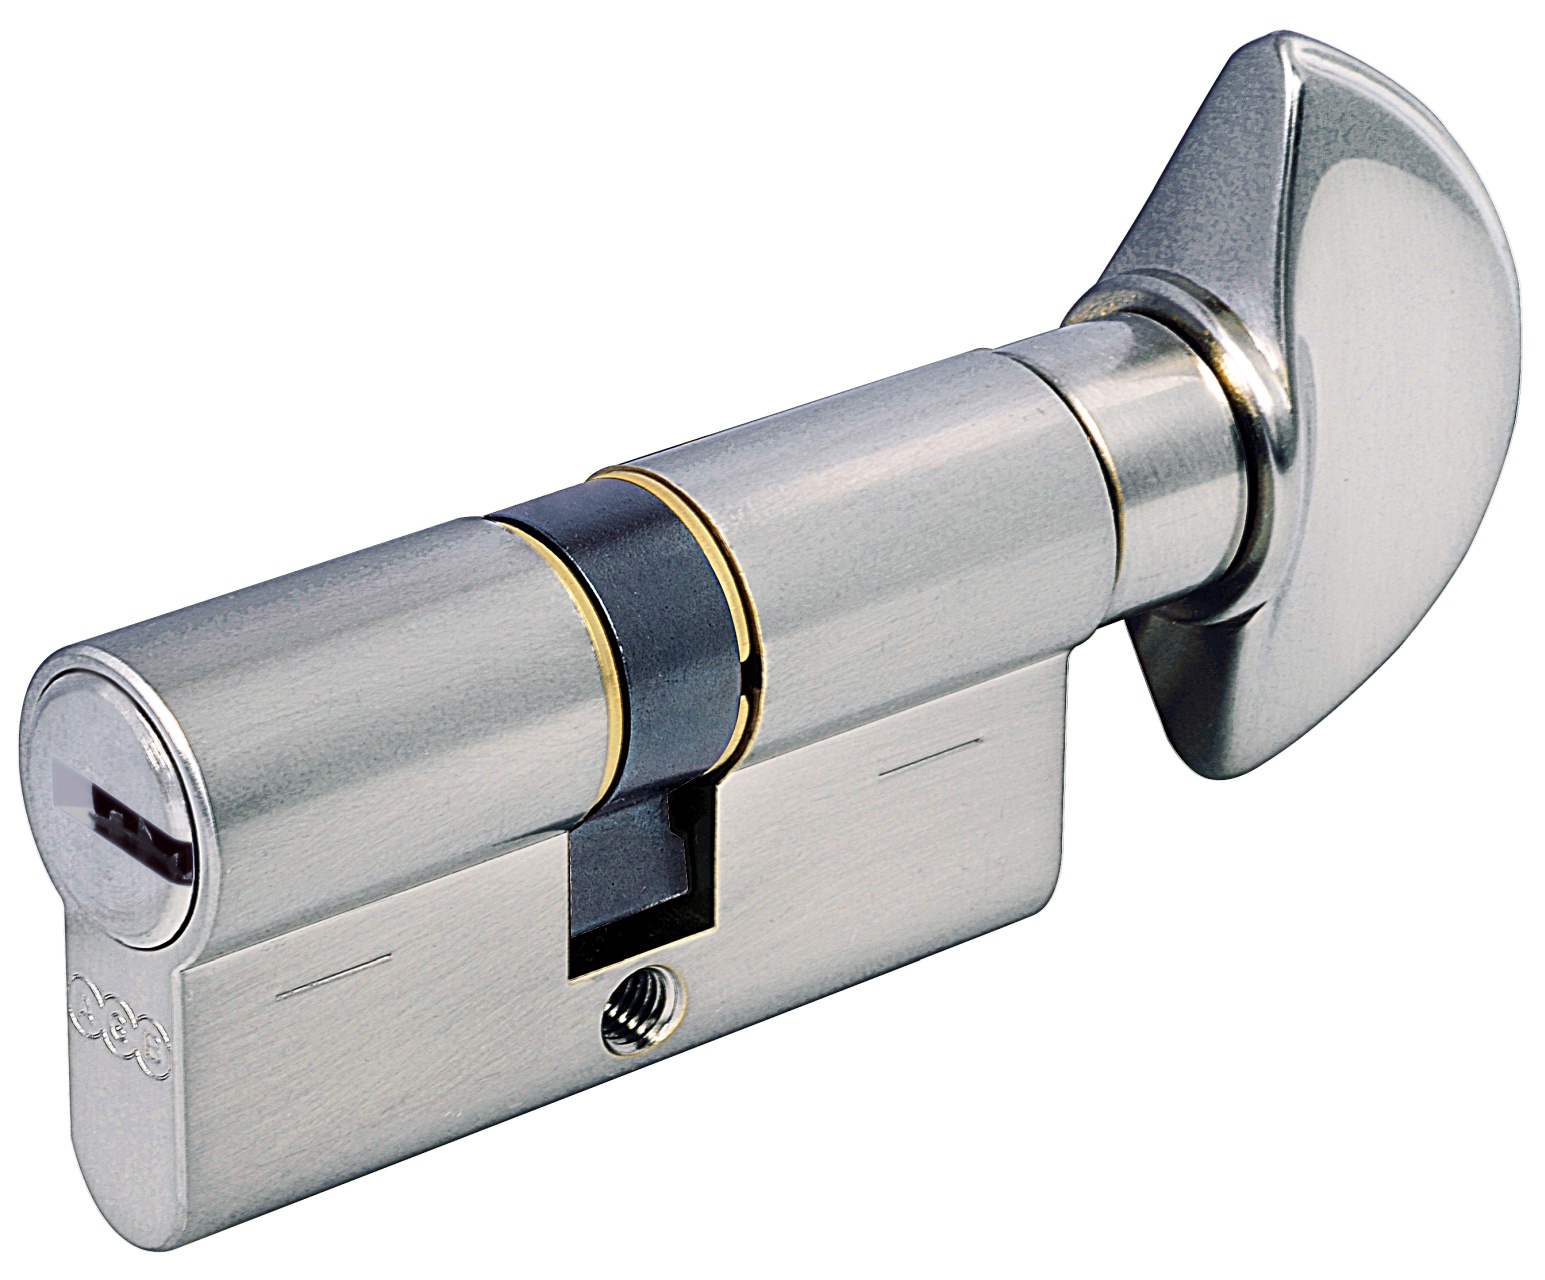 AGB -  Cilindro SCUDO 5000 PS frizionato anti bamping con chiave e pomolo ka - a chiave uguale - col. NICHELATO OPACO - lunghezza 90 - misura 40 - 10 - 40